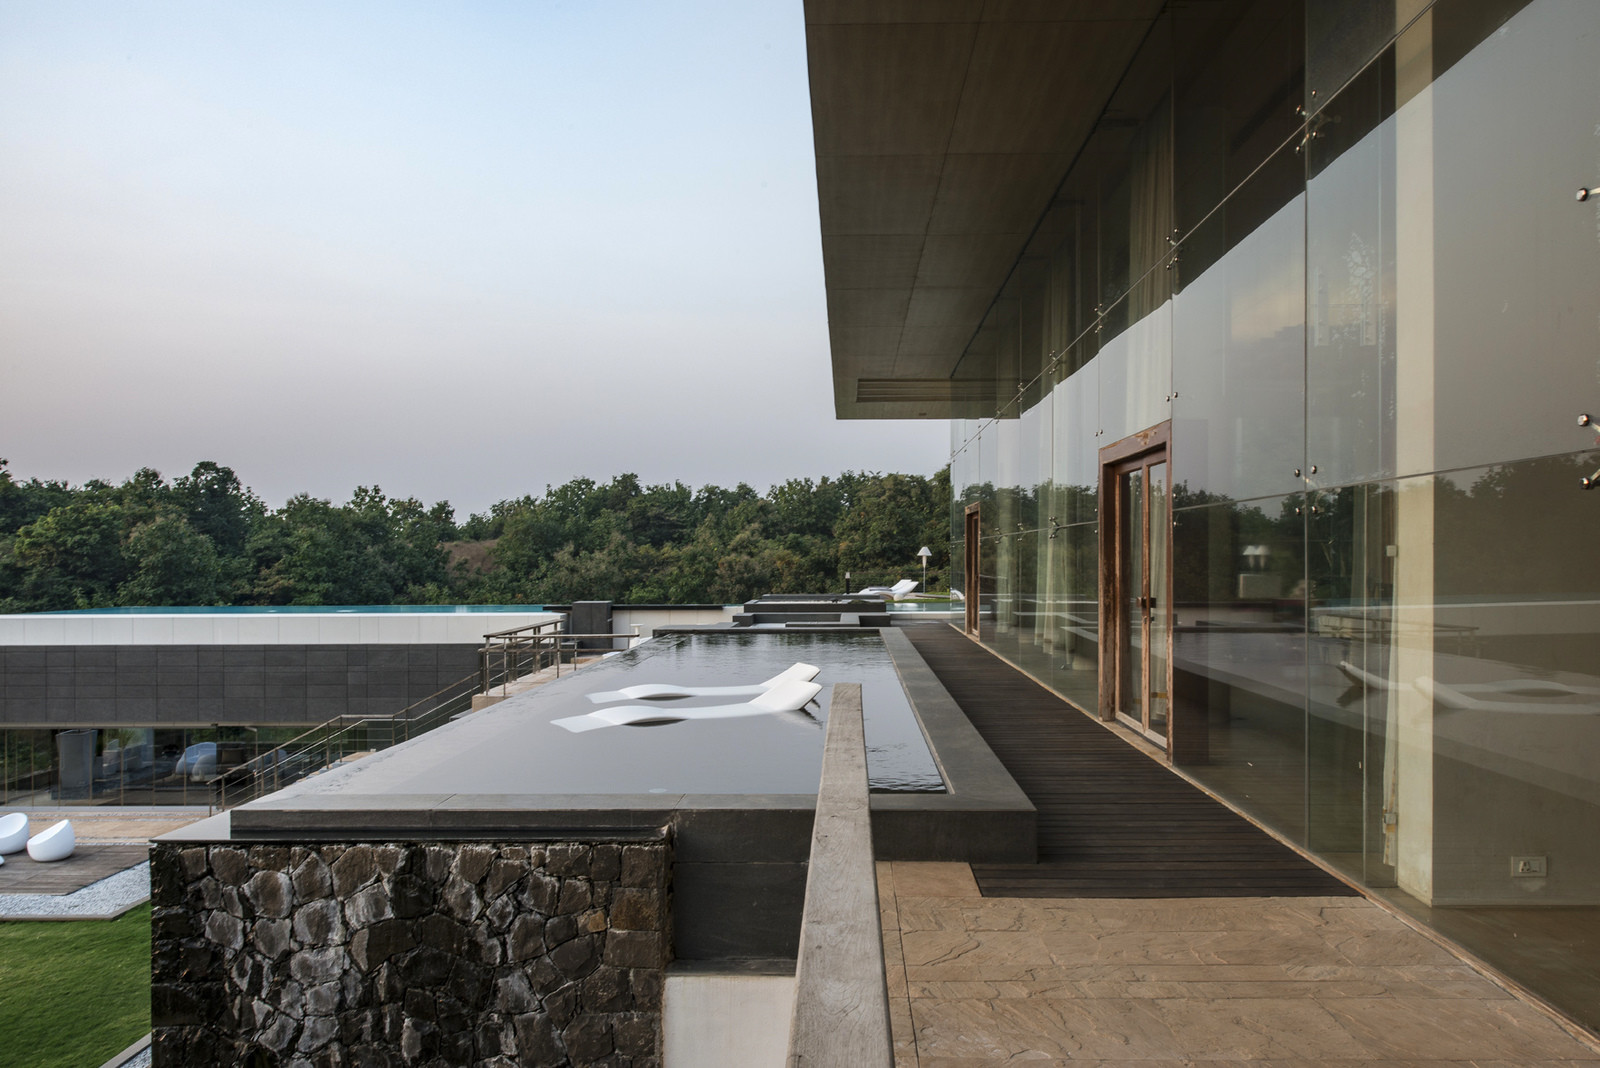  Luxury villa in India